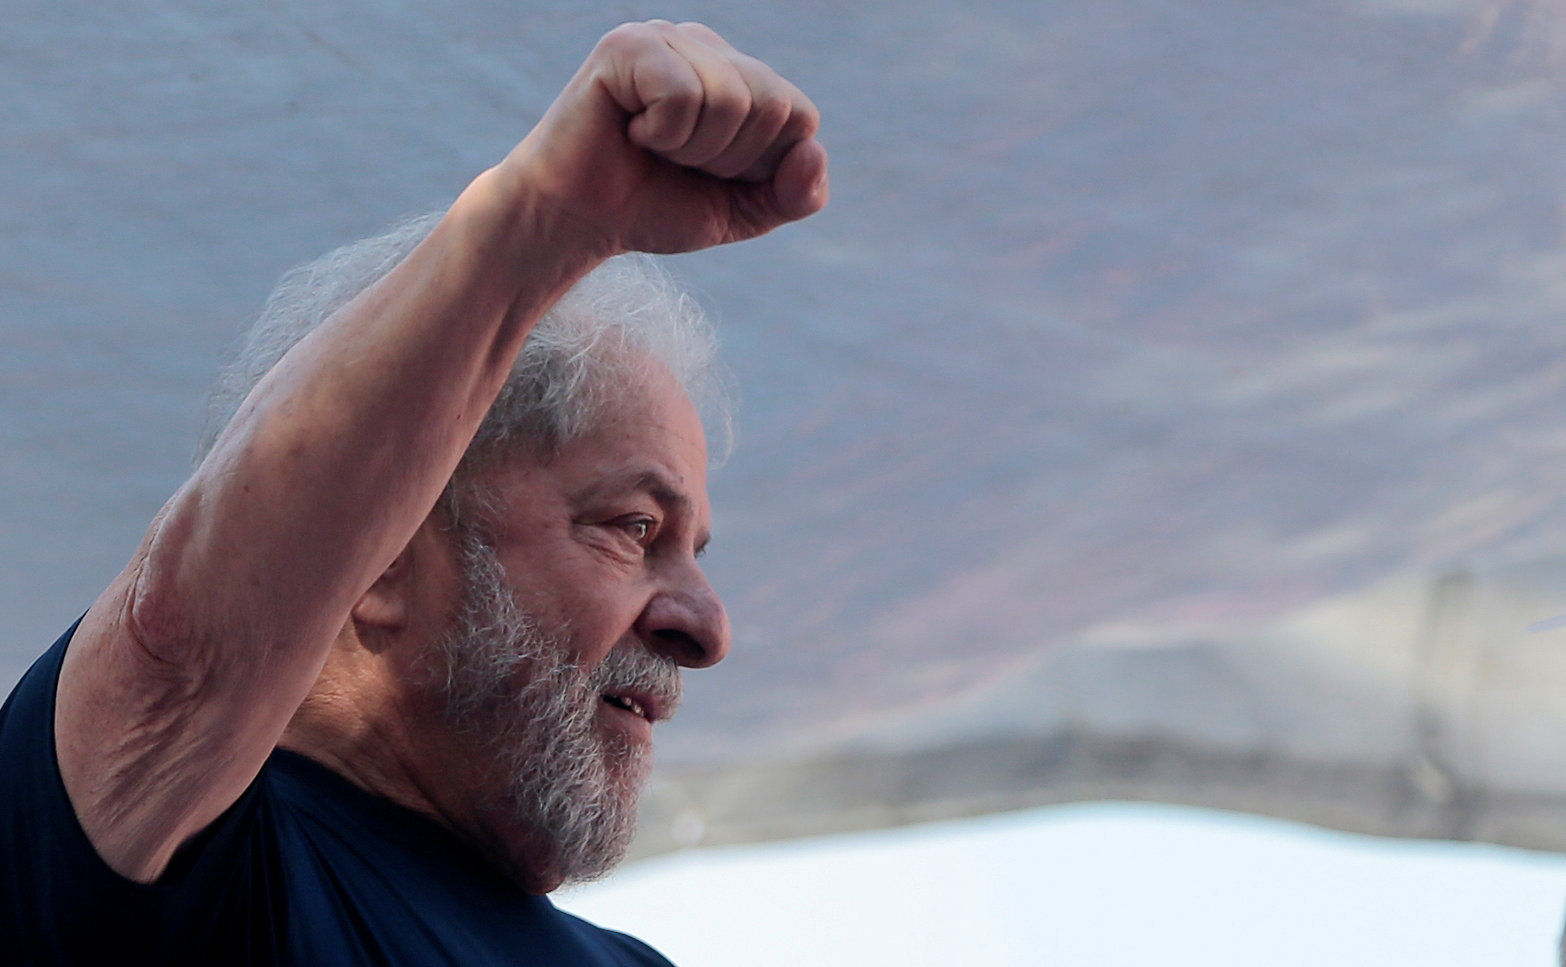 Former Brazilian President Luiz Inacio Lula da Silva attends a protest in front of the metallurgic trade union in Sao Bernardo do Campo